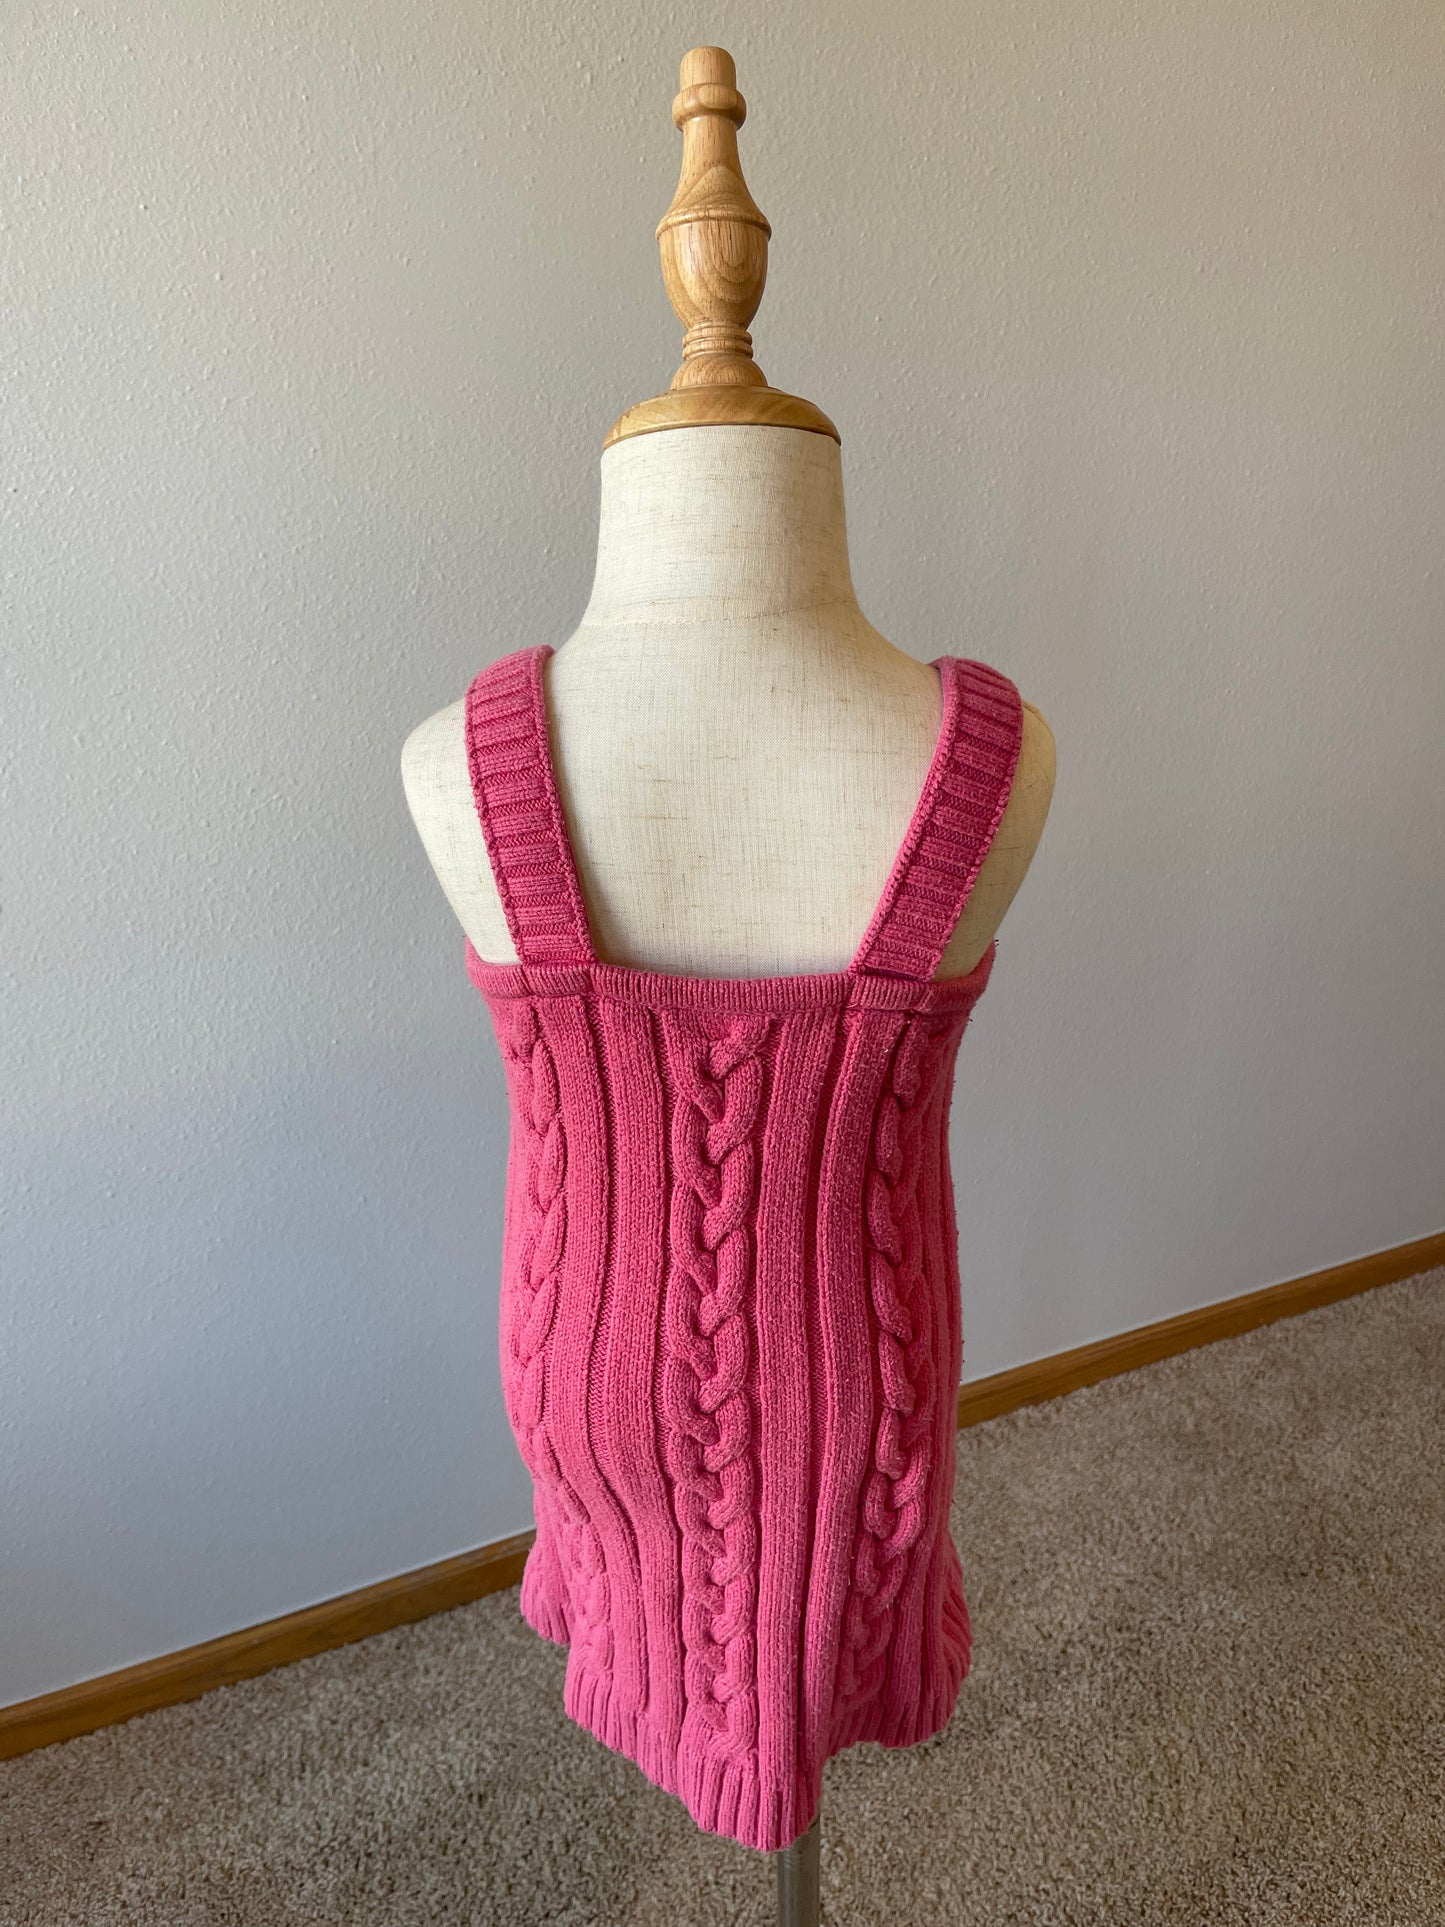 Gymboree Sleeveless Sweater Dress (4T)